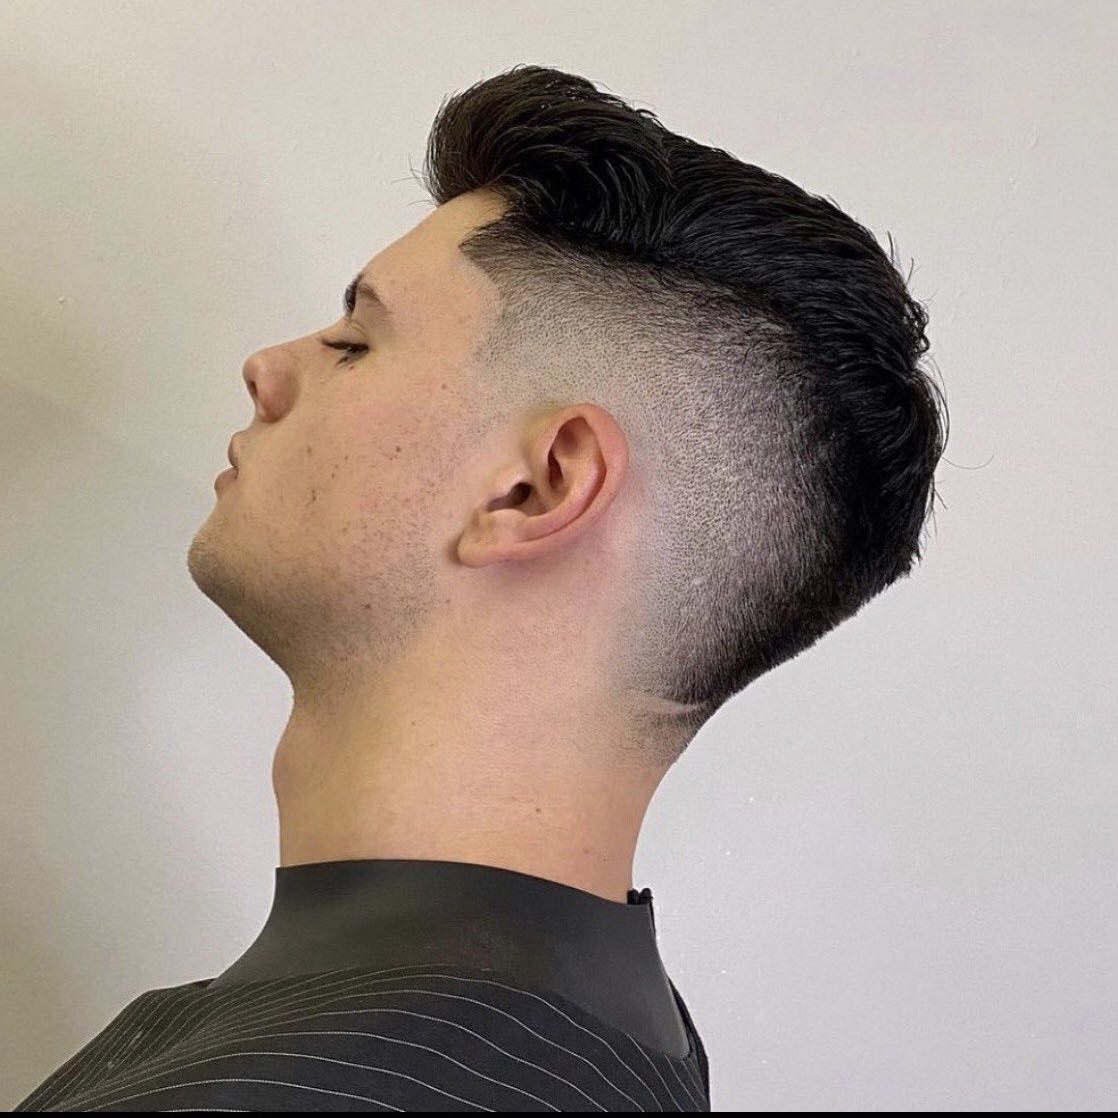 Portfolio usługi Strzyżenie włosów / Haircut